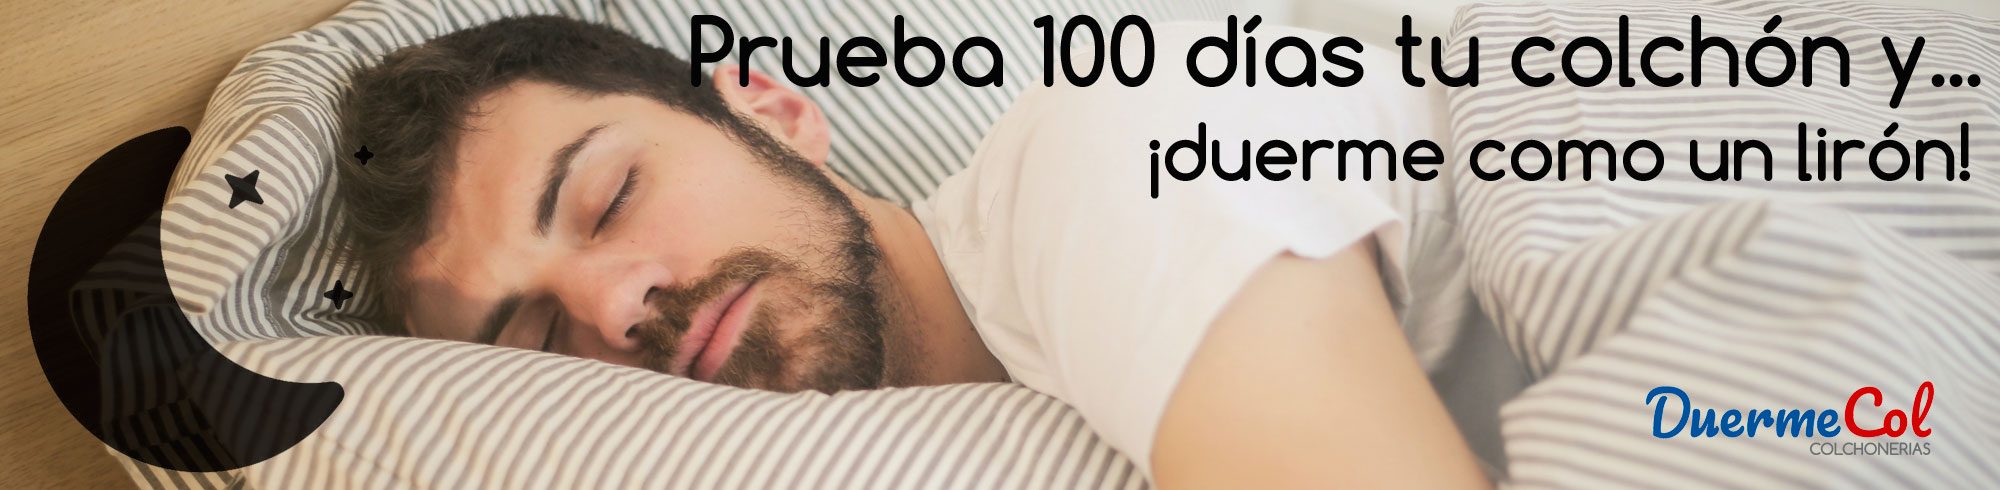 Duermecol prueba 100 días tu colchón y duerme como un lirón